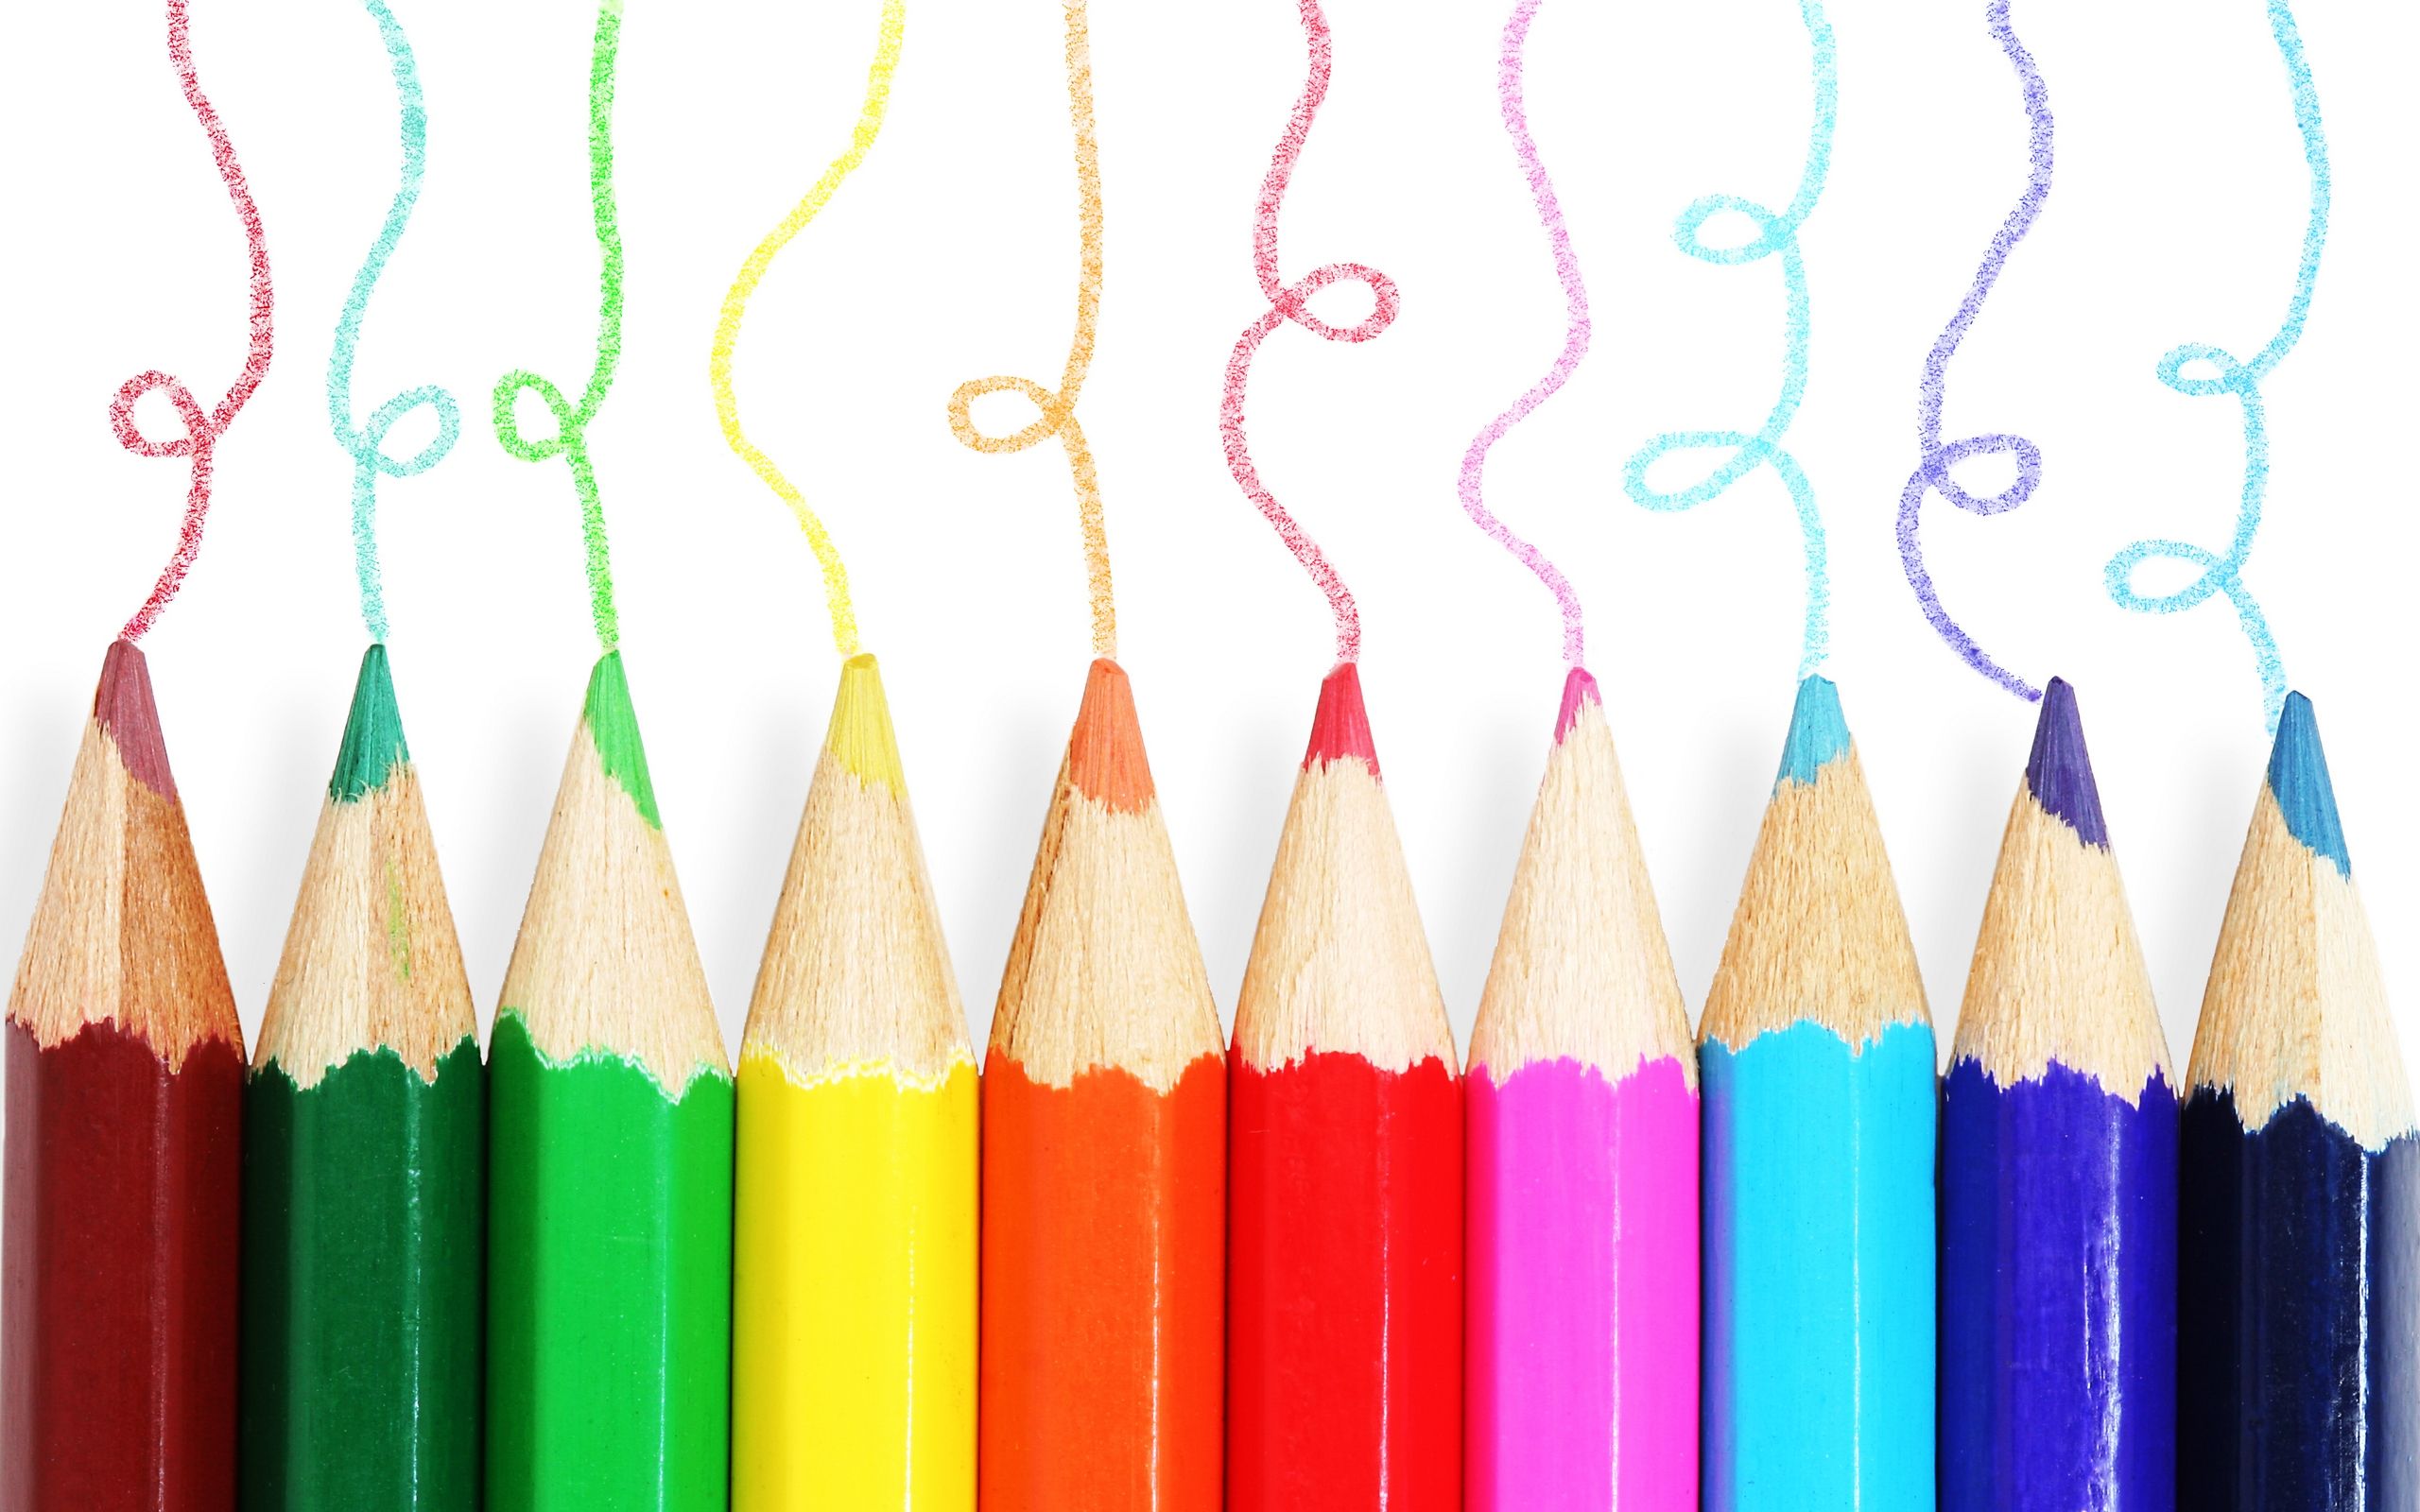 Colored pencils - Pencils Wallpaper (24173421) - Fanpop